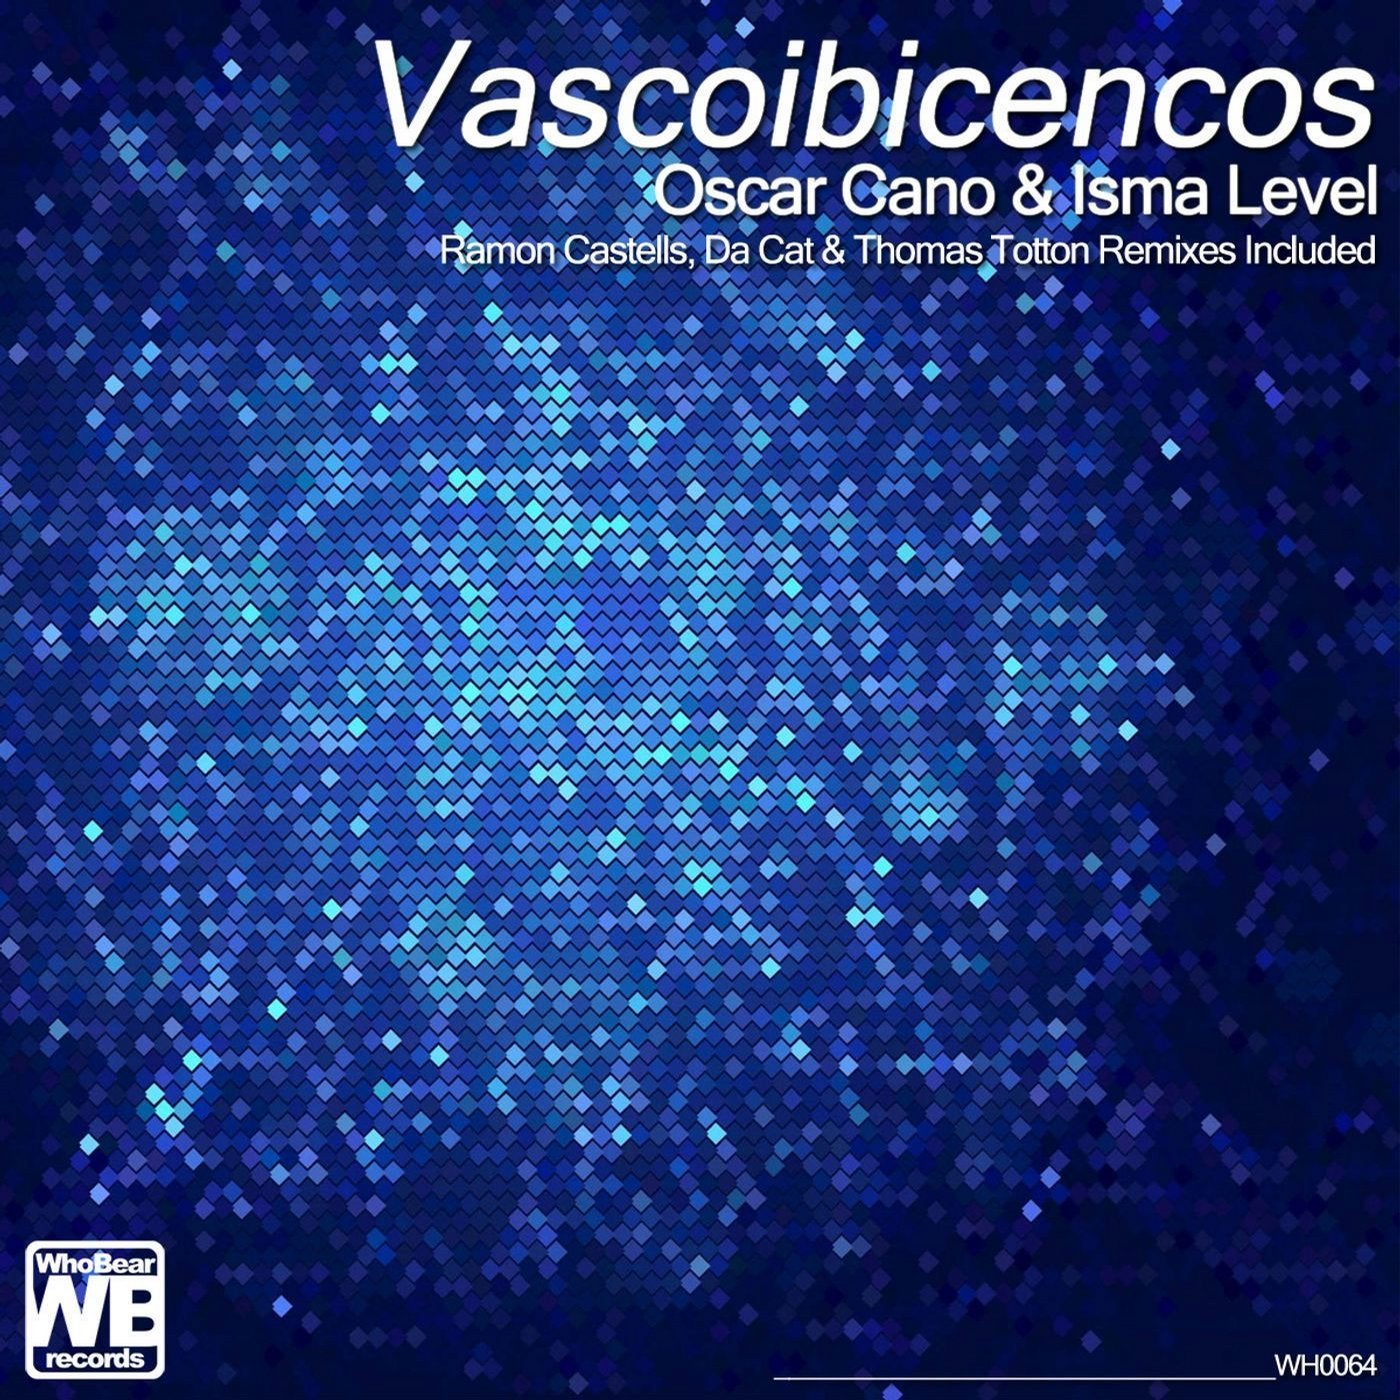 Vascoibicencos